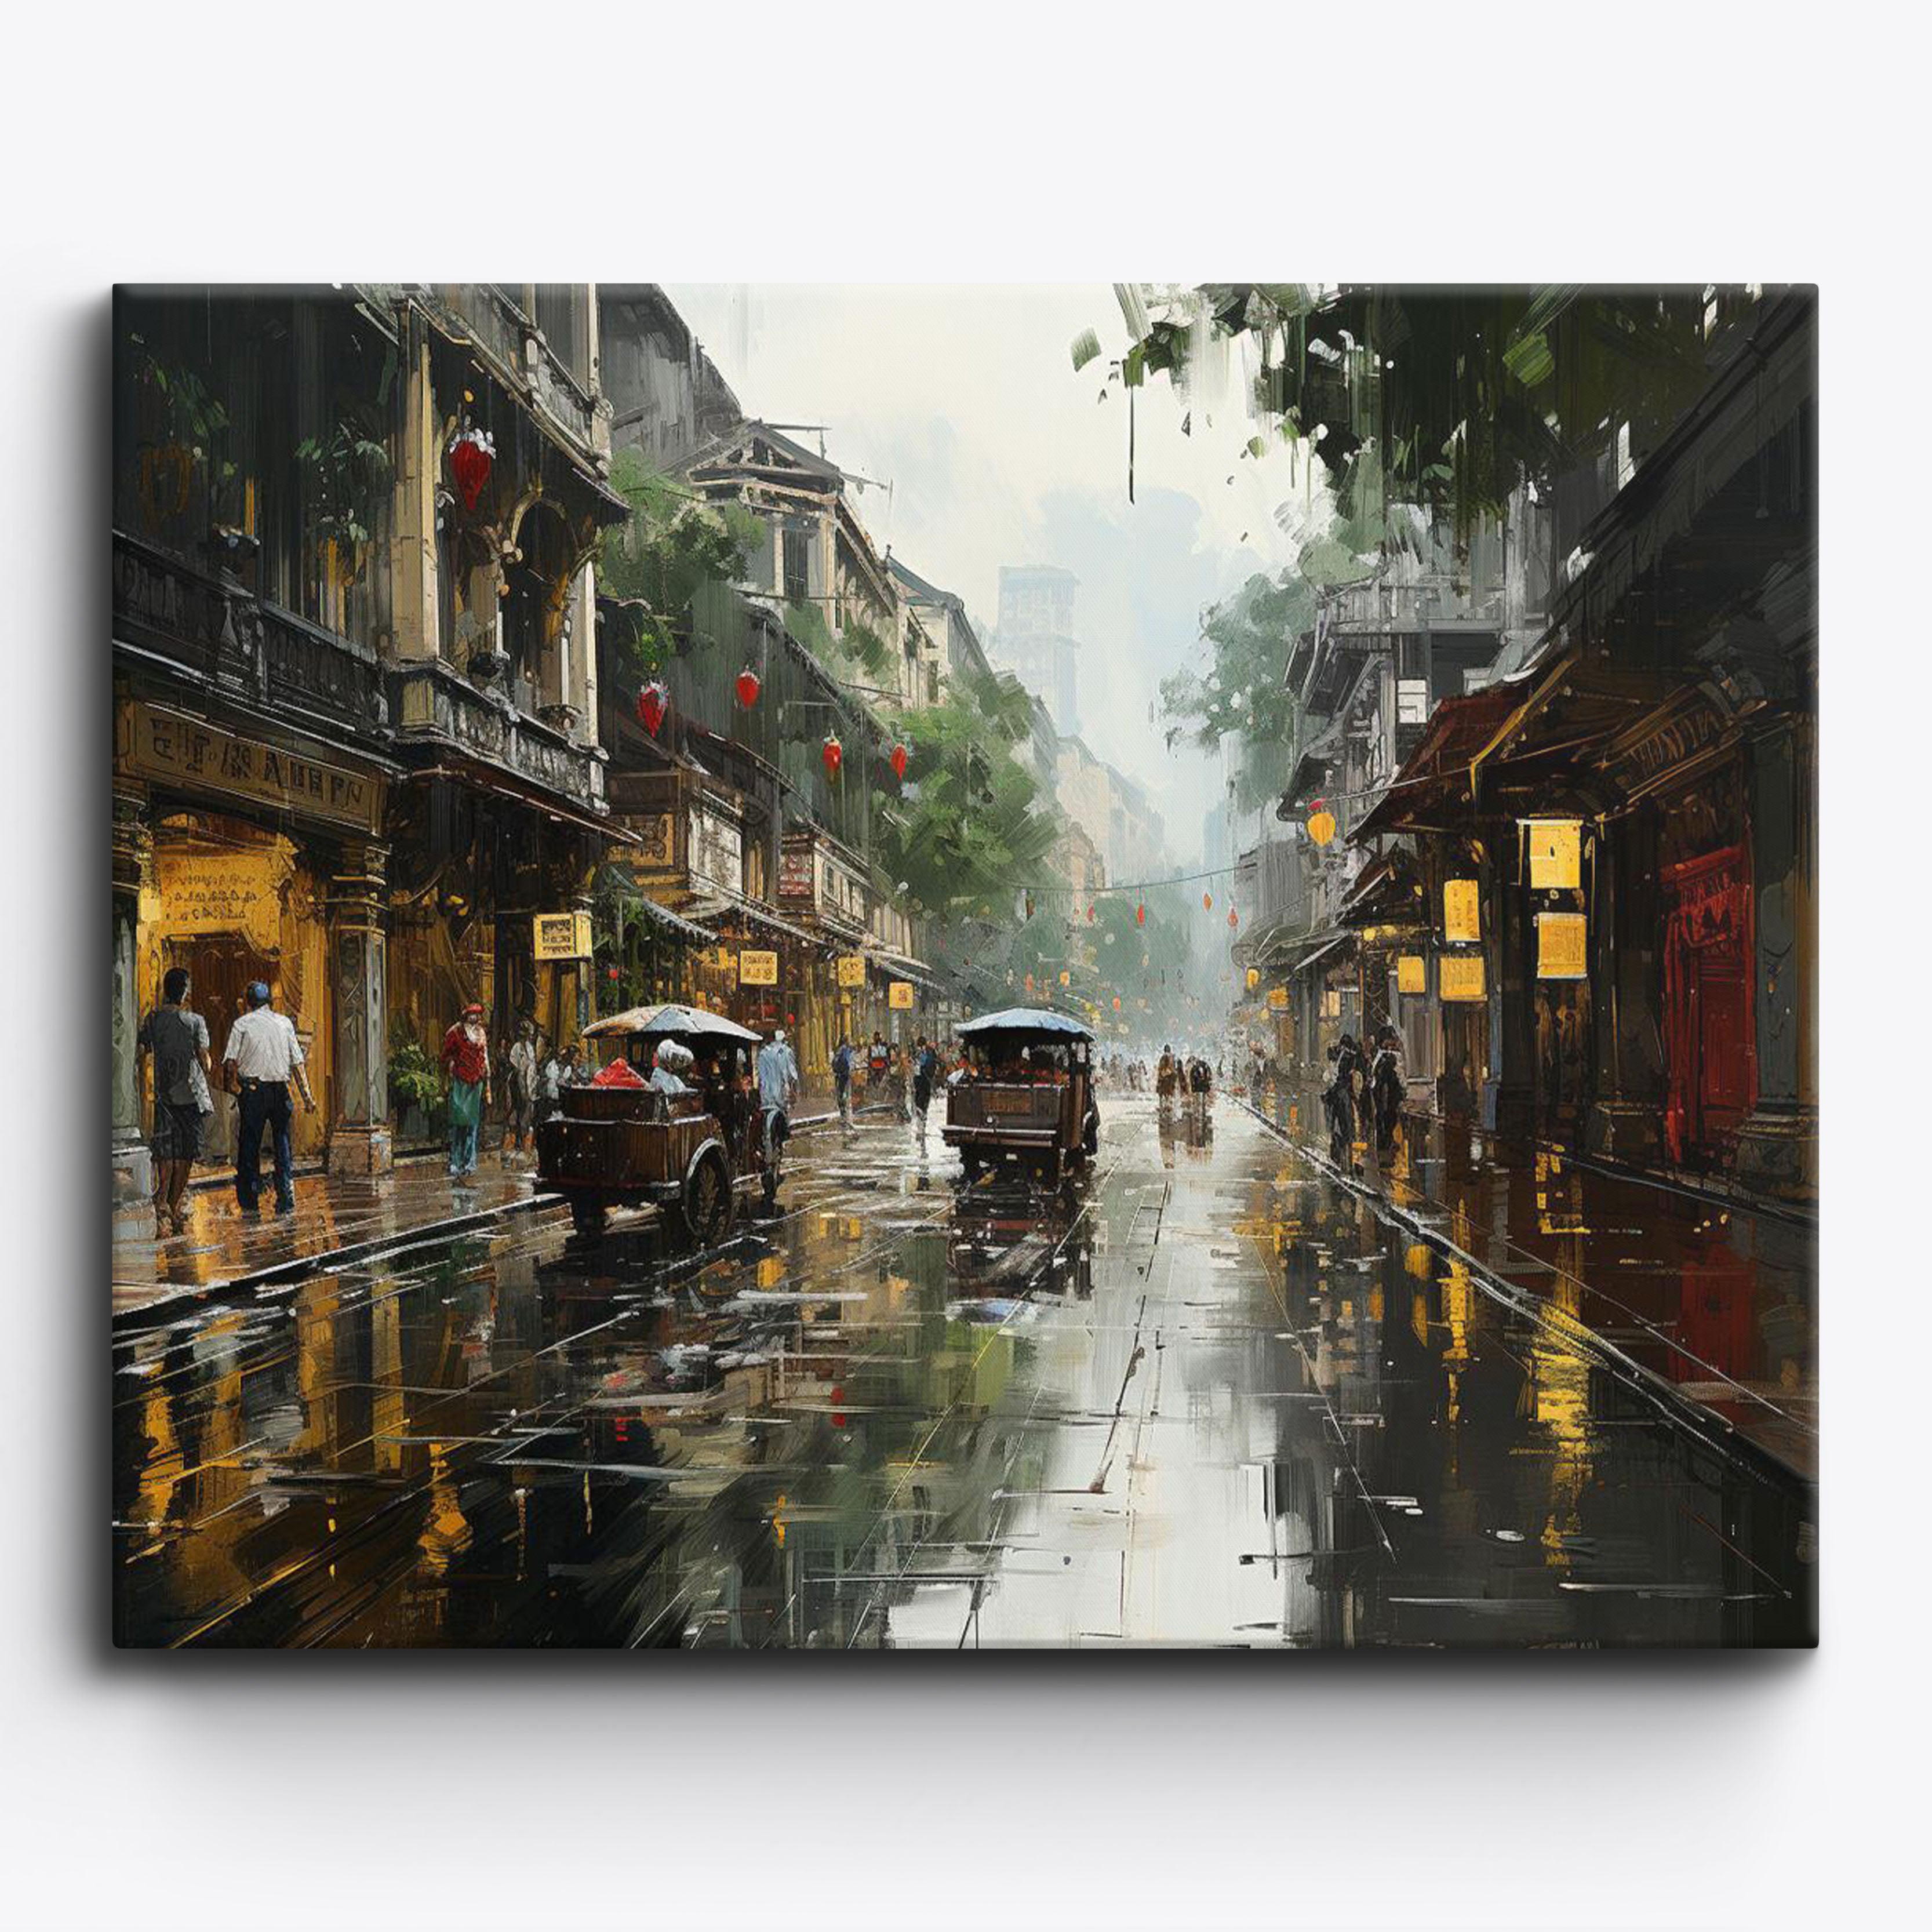 Vietnam Raining No Frame